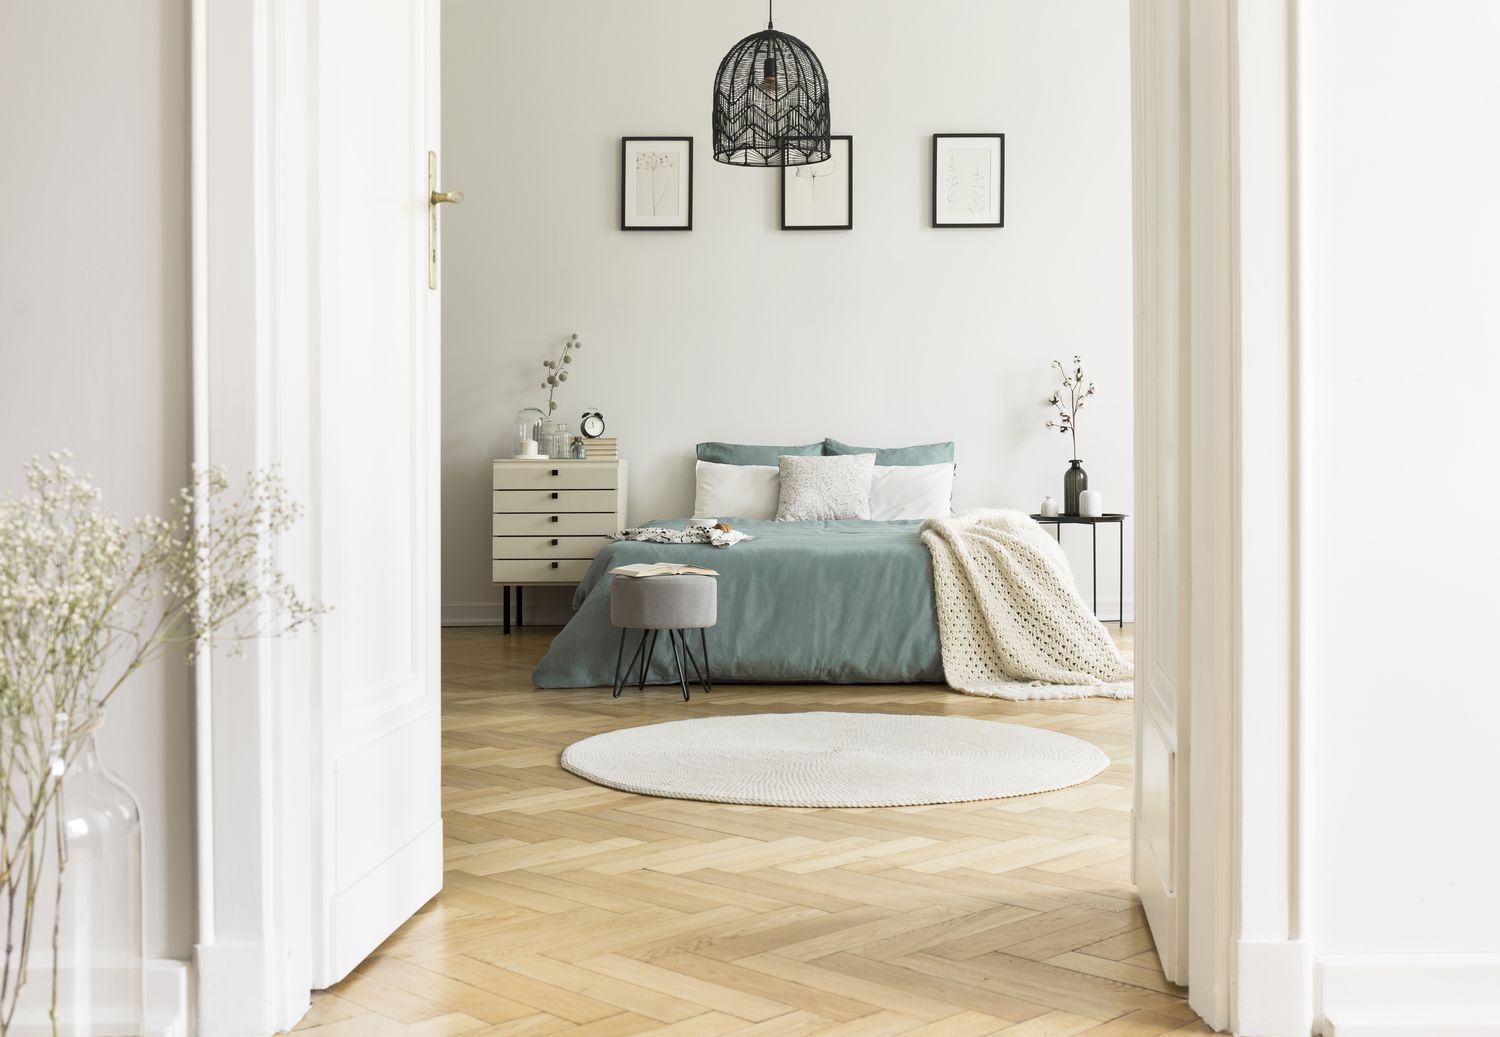 Echtes Foto einer weißen Schlafzimmereinrichtung mit rundem Teppich, Kingsize-Bett mit Kissen und pastellfarbener Bettwäsche, einfachen Postern und Fischgrätenparkett